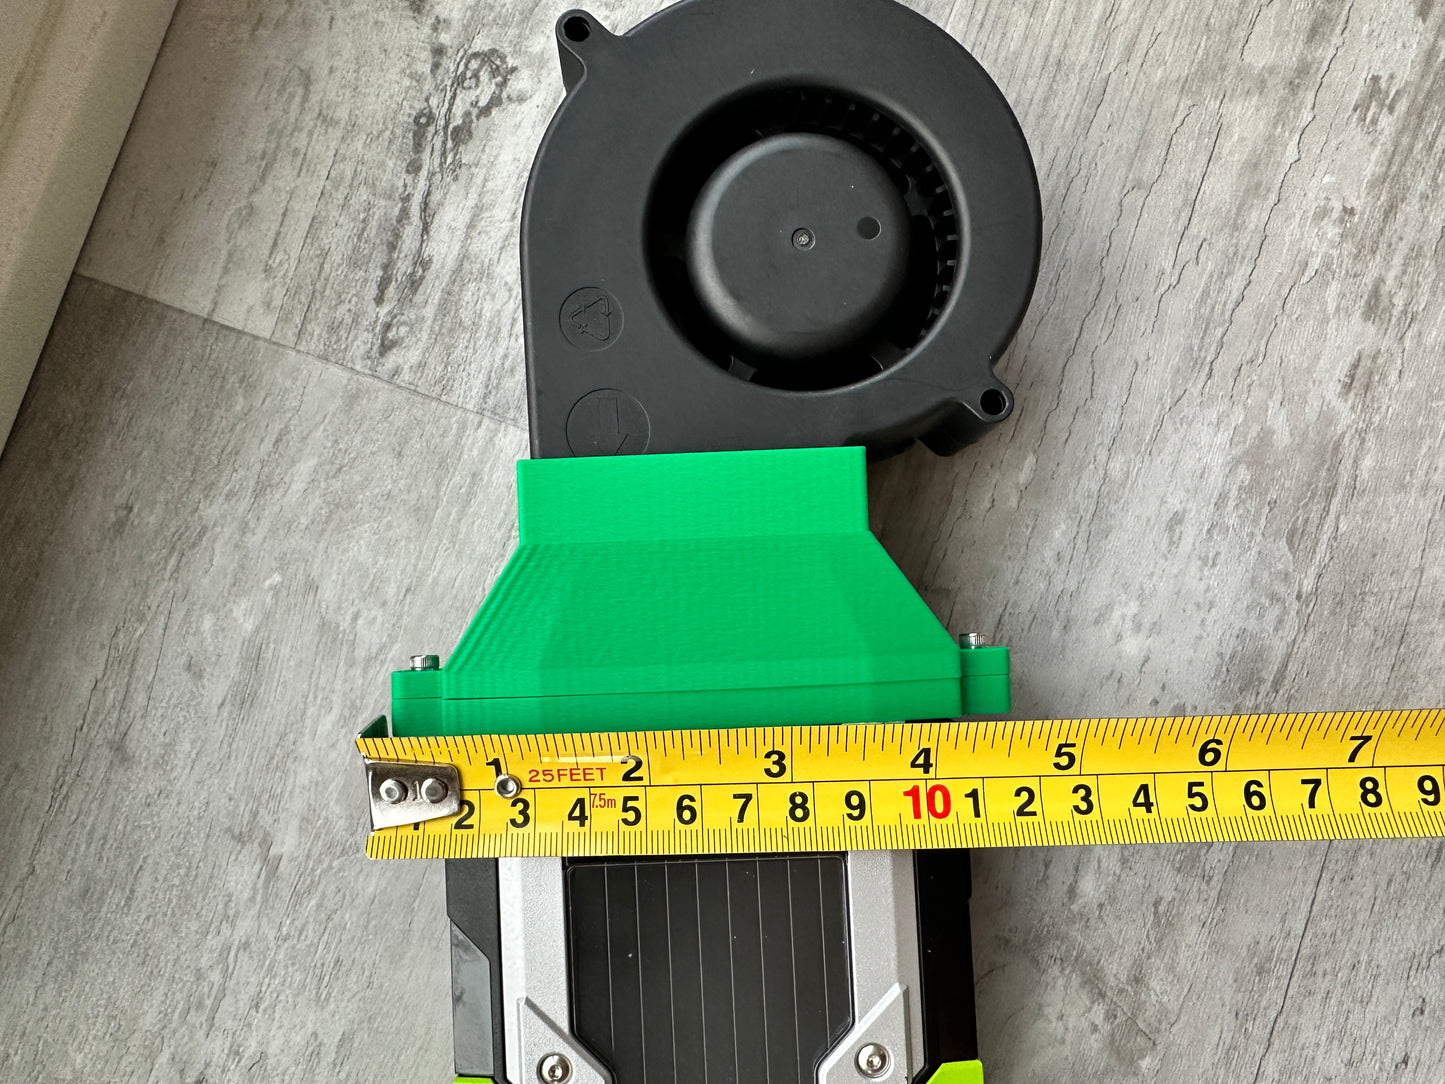 Nvidia Tesla Blower Fan Adapter Kit for M40,K80,P40,P100,V100s